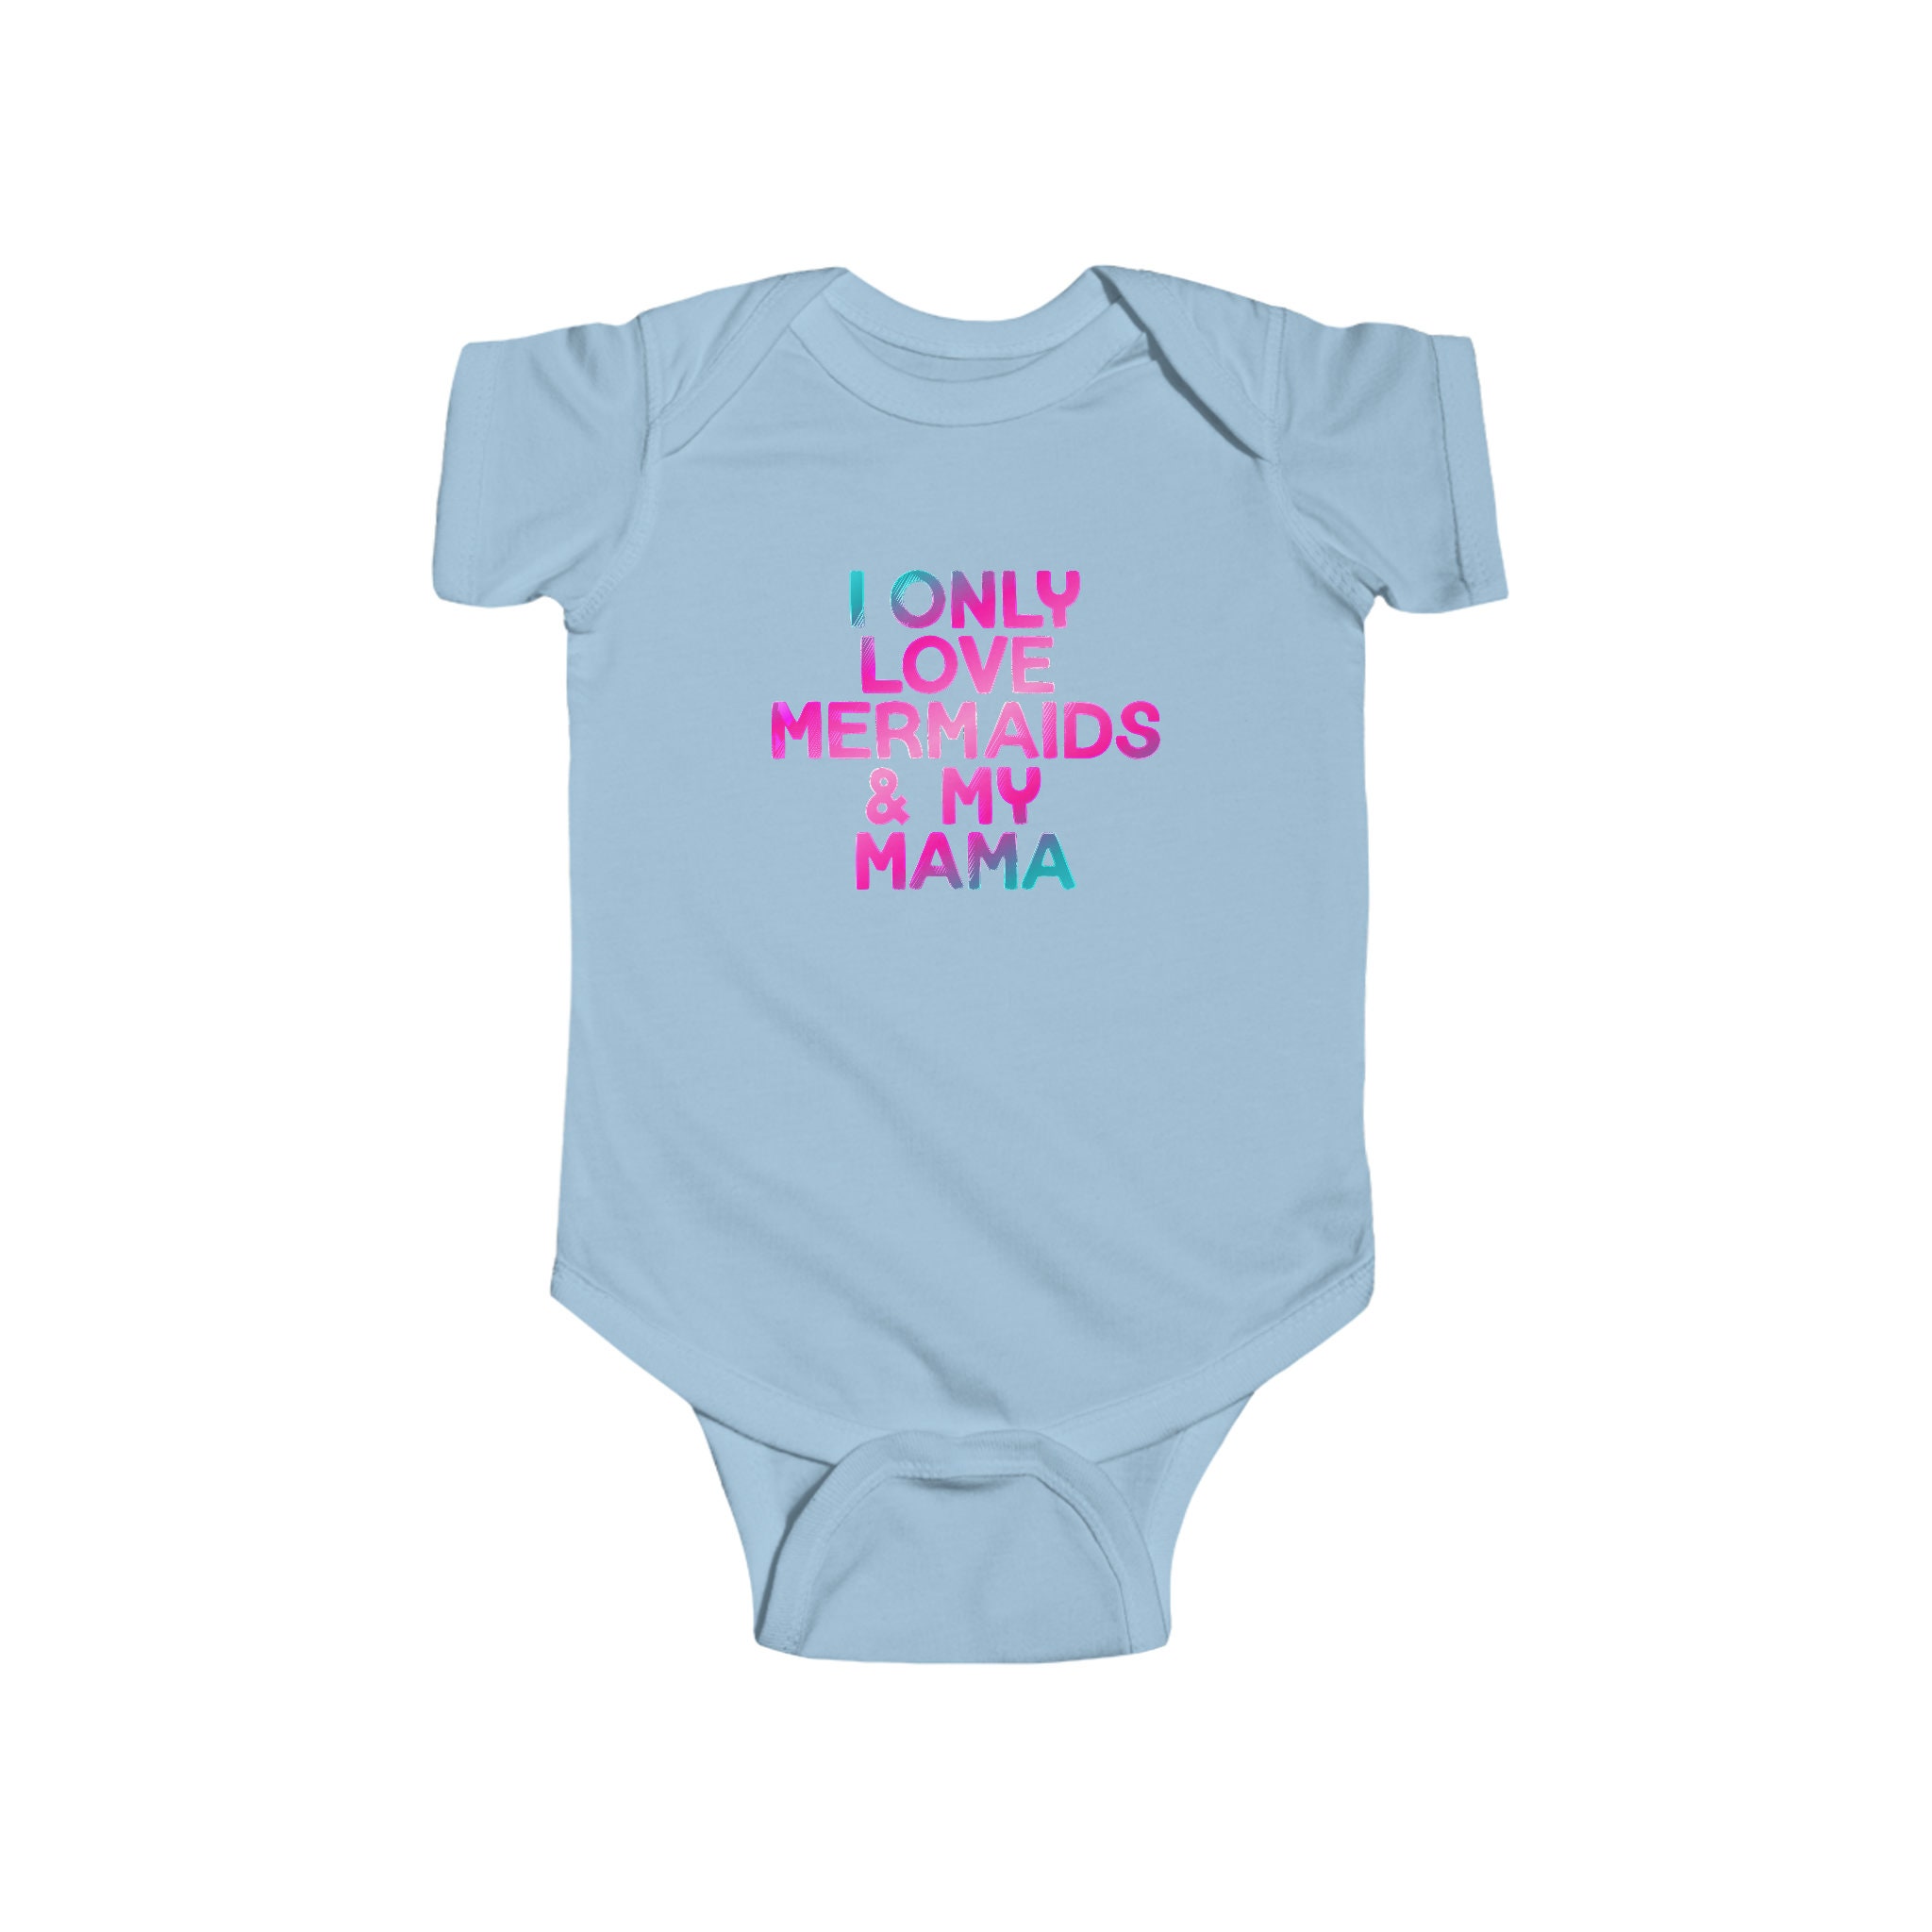 Discover Mermaid Baby Bodysuit, Mermaid Baby Shirt, Cute Baby